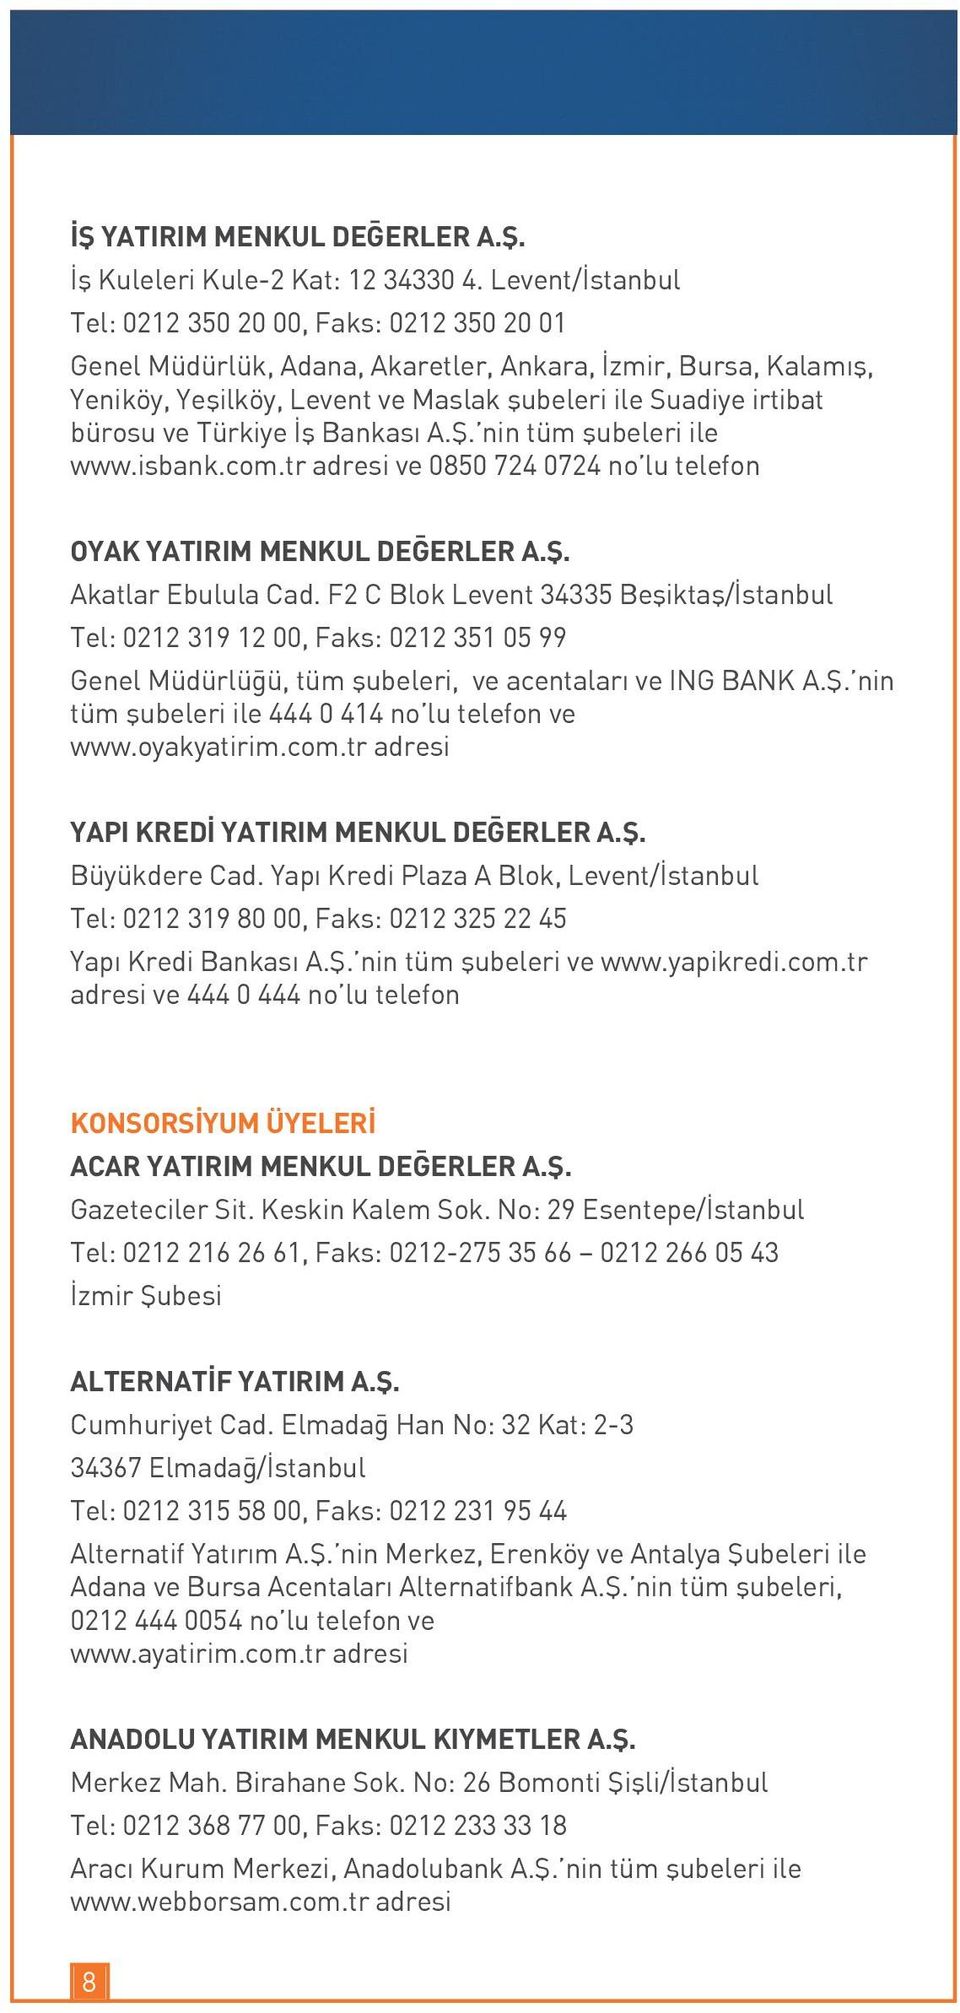 Türkiye İş Bankası A.Ş. nin tüm şubeleri ile www.isbank.com.tr adresi ve 0850 724 0724 no lu telefon OYAK YATIRIM MENKUL DEĞERLER A.Ş. Akatlar Ebulula Cad.